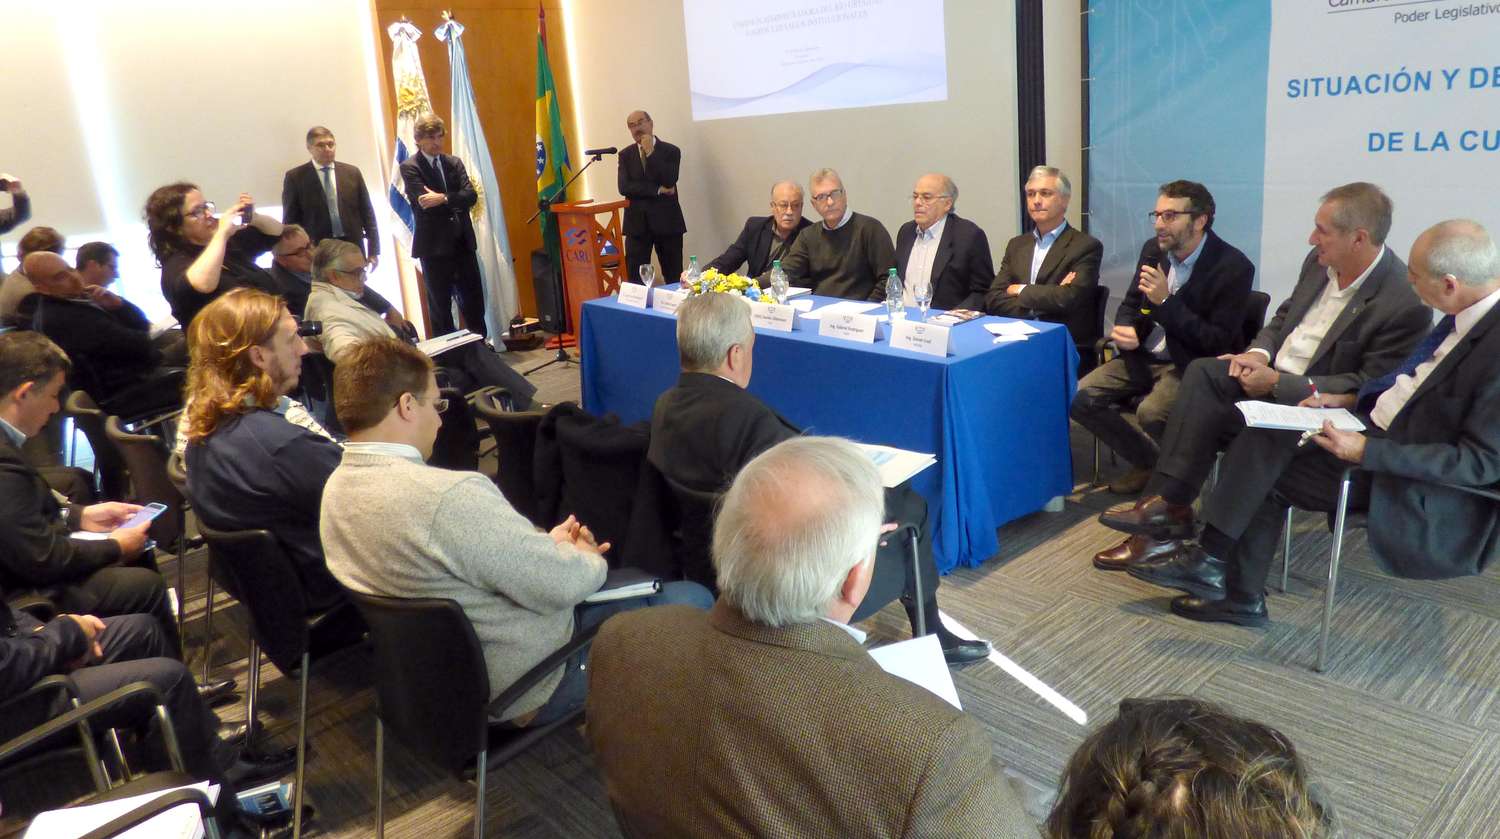 Gualeguaychú participó de la reunión de la Comisión Administradora del Río Uruguay